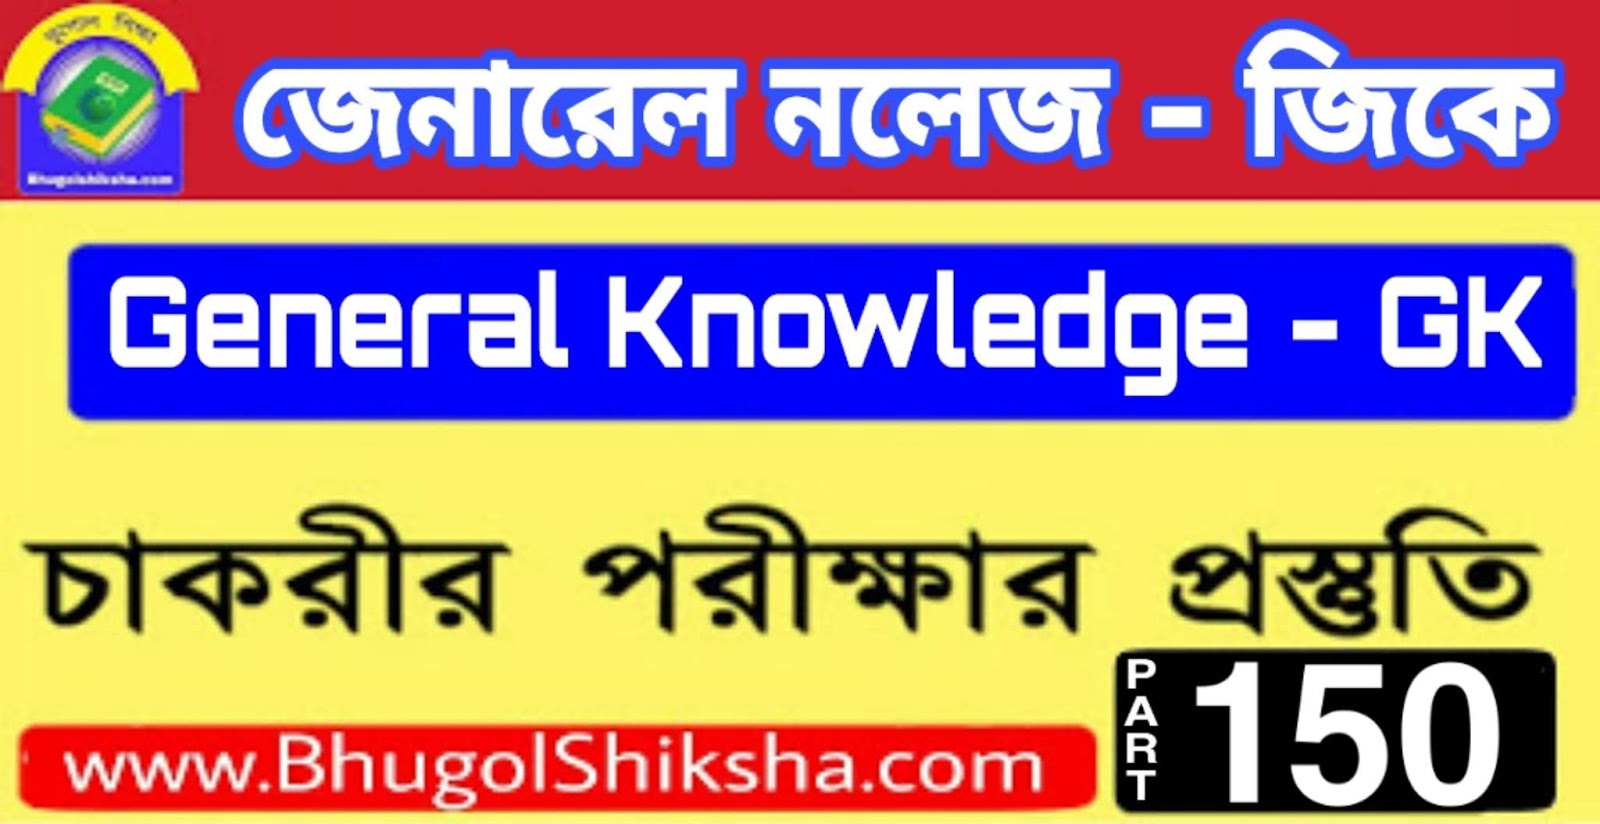 চাকরির পরীক্ষার প্রস্তুতি জেনারেল নলেজ জিকে প্রশ্নউত্তর (General Knowledge GK MCQ for All Comparative exam in Bengali) Part - 150